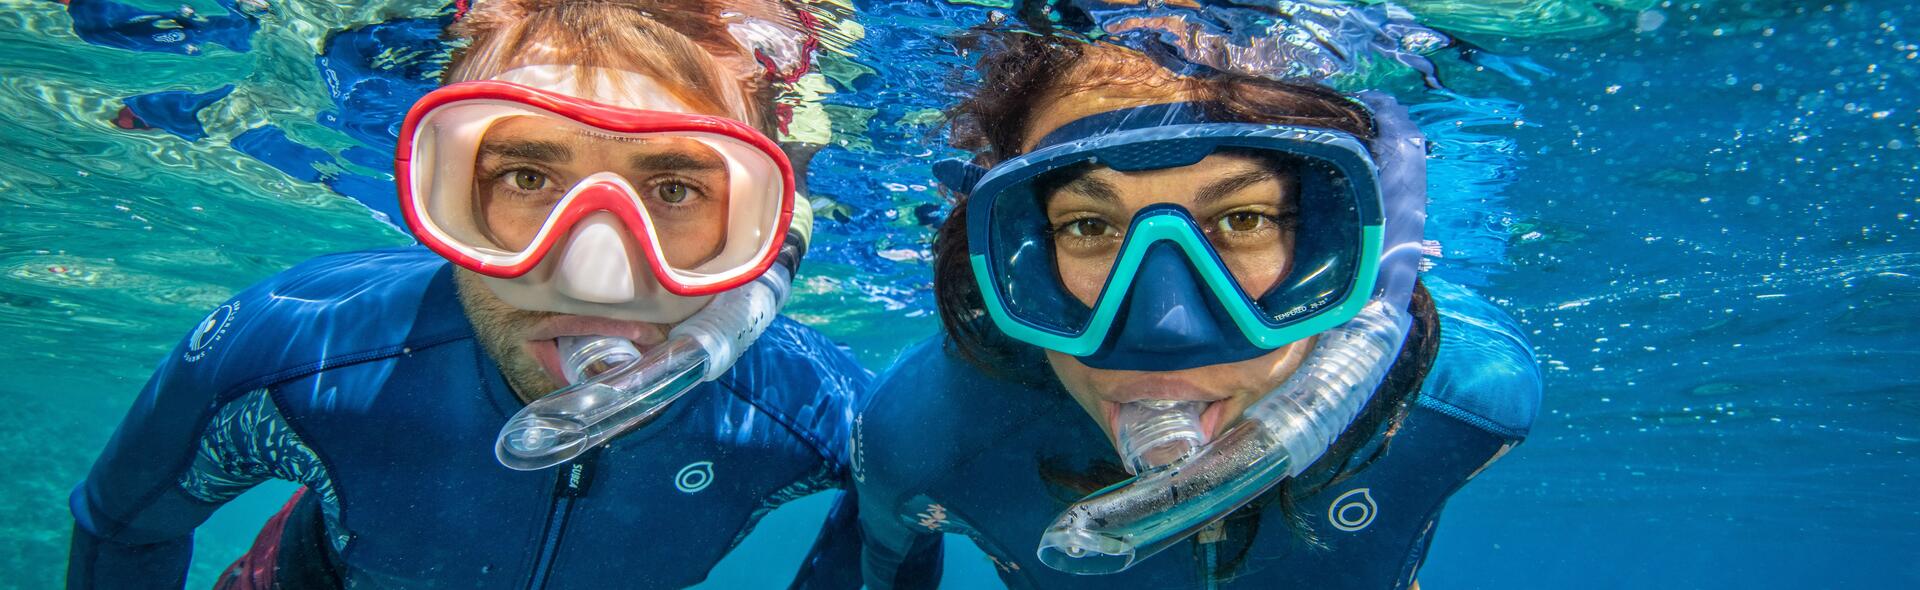 Como escolher o tubo de snorkeling? 